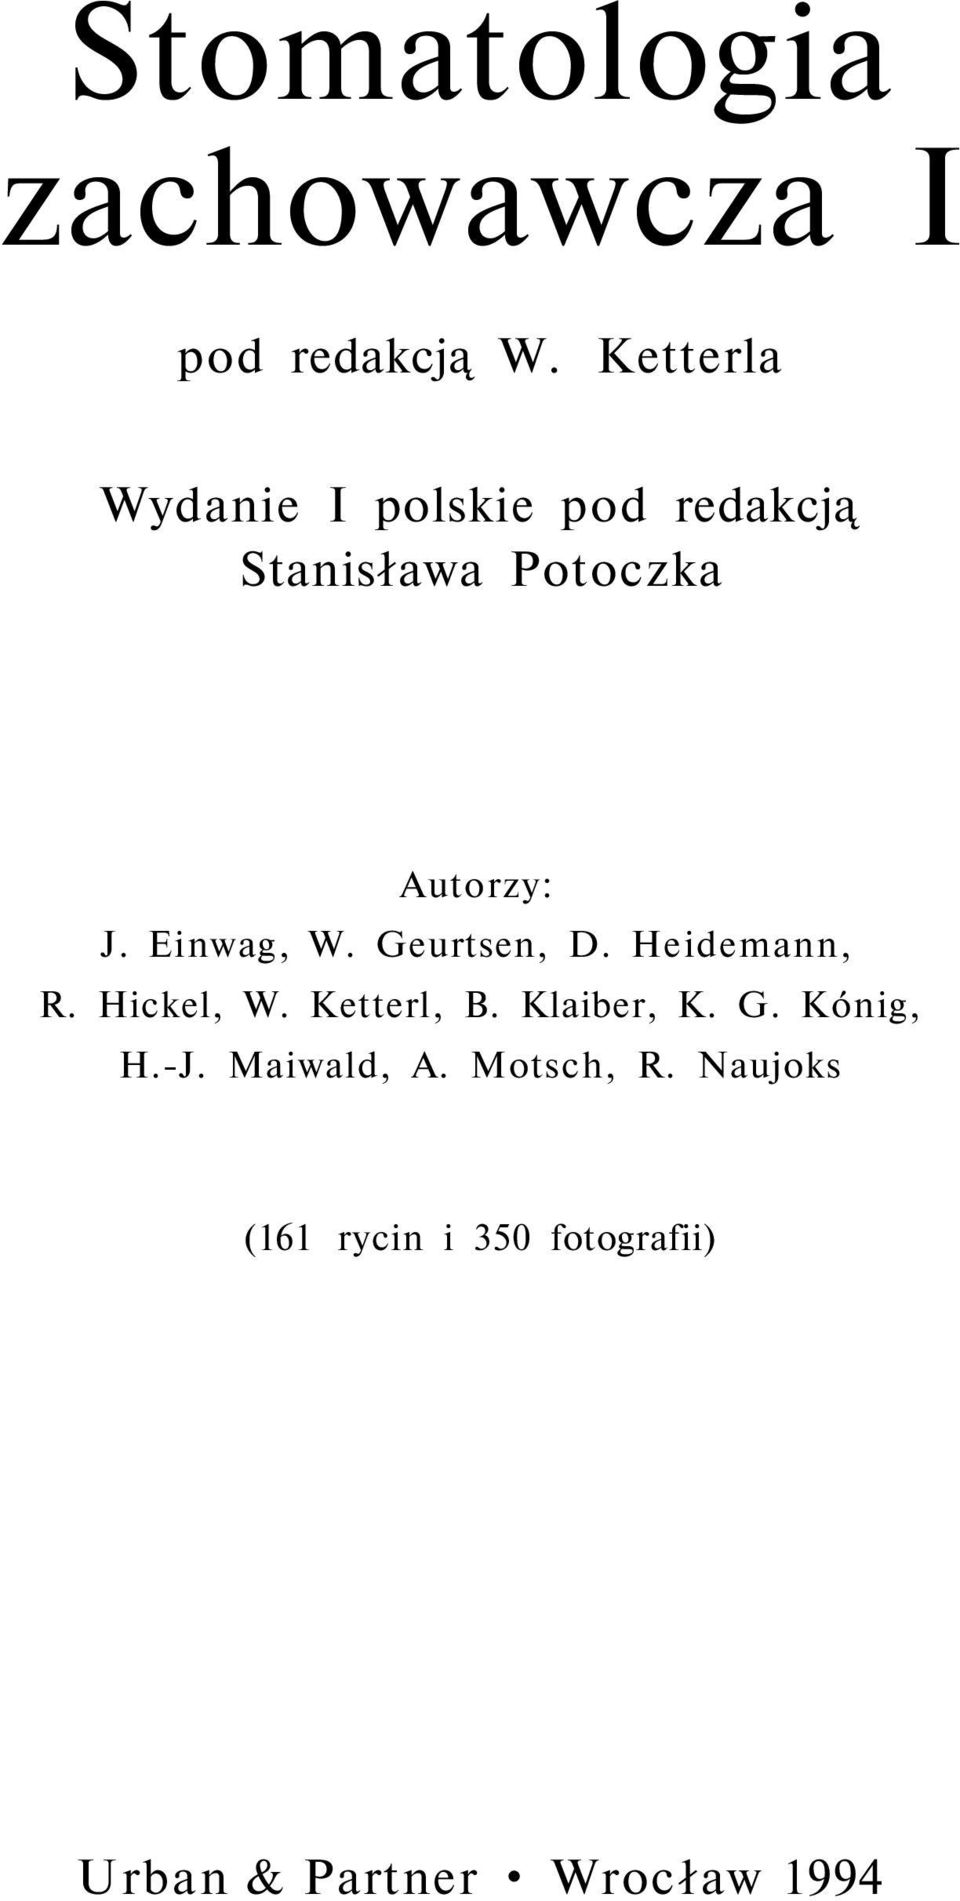 Einwag, W. Geurtsen, D. Heidemann, R. Hickel, W. Ketterl, B. Klaiber, K.